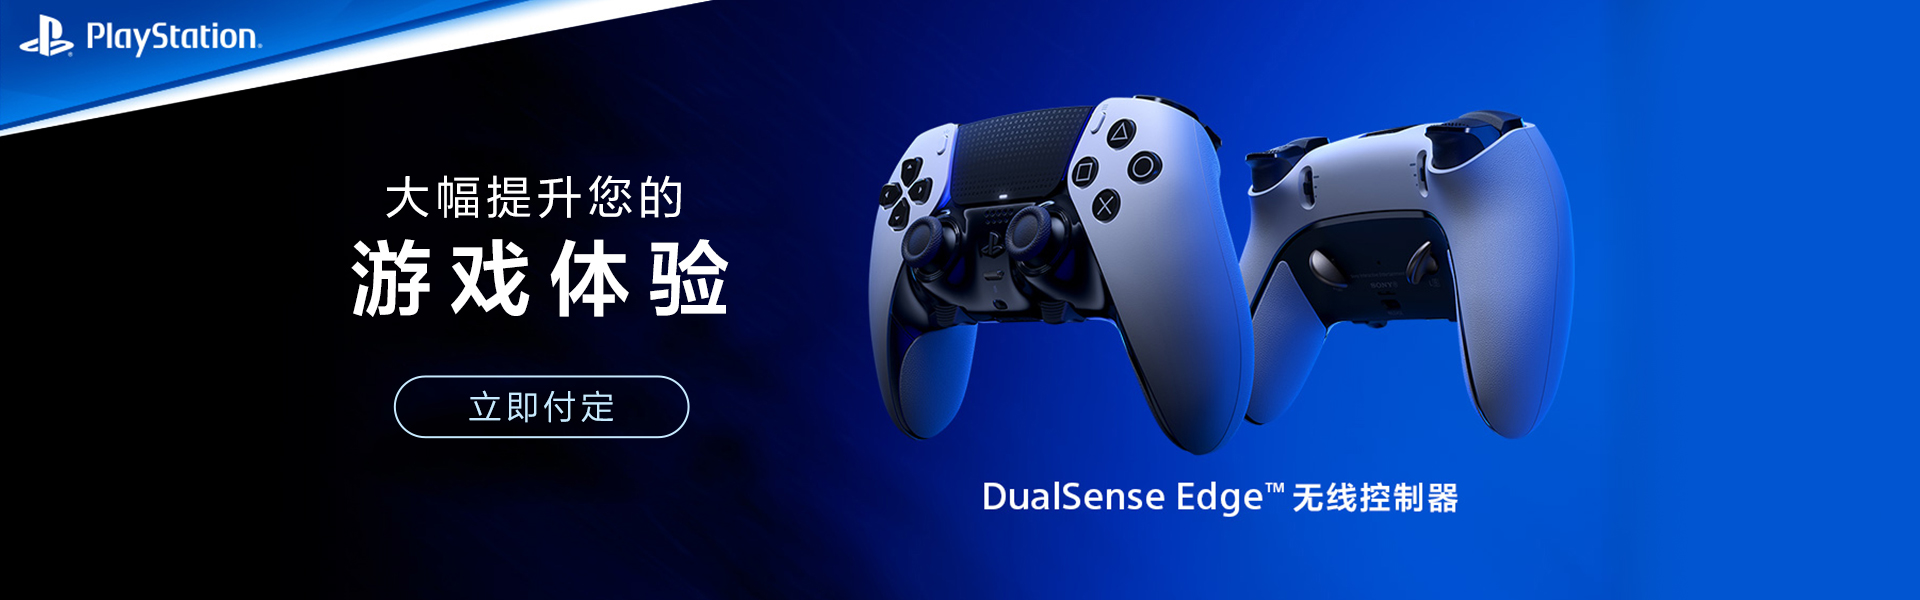 DualSense Edge无线控制器